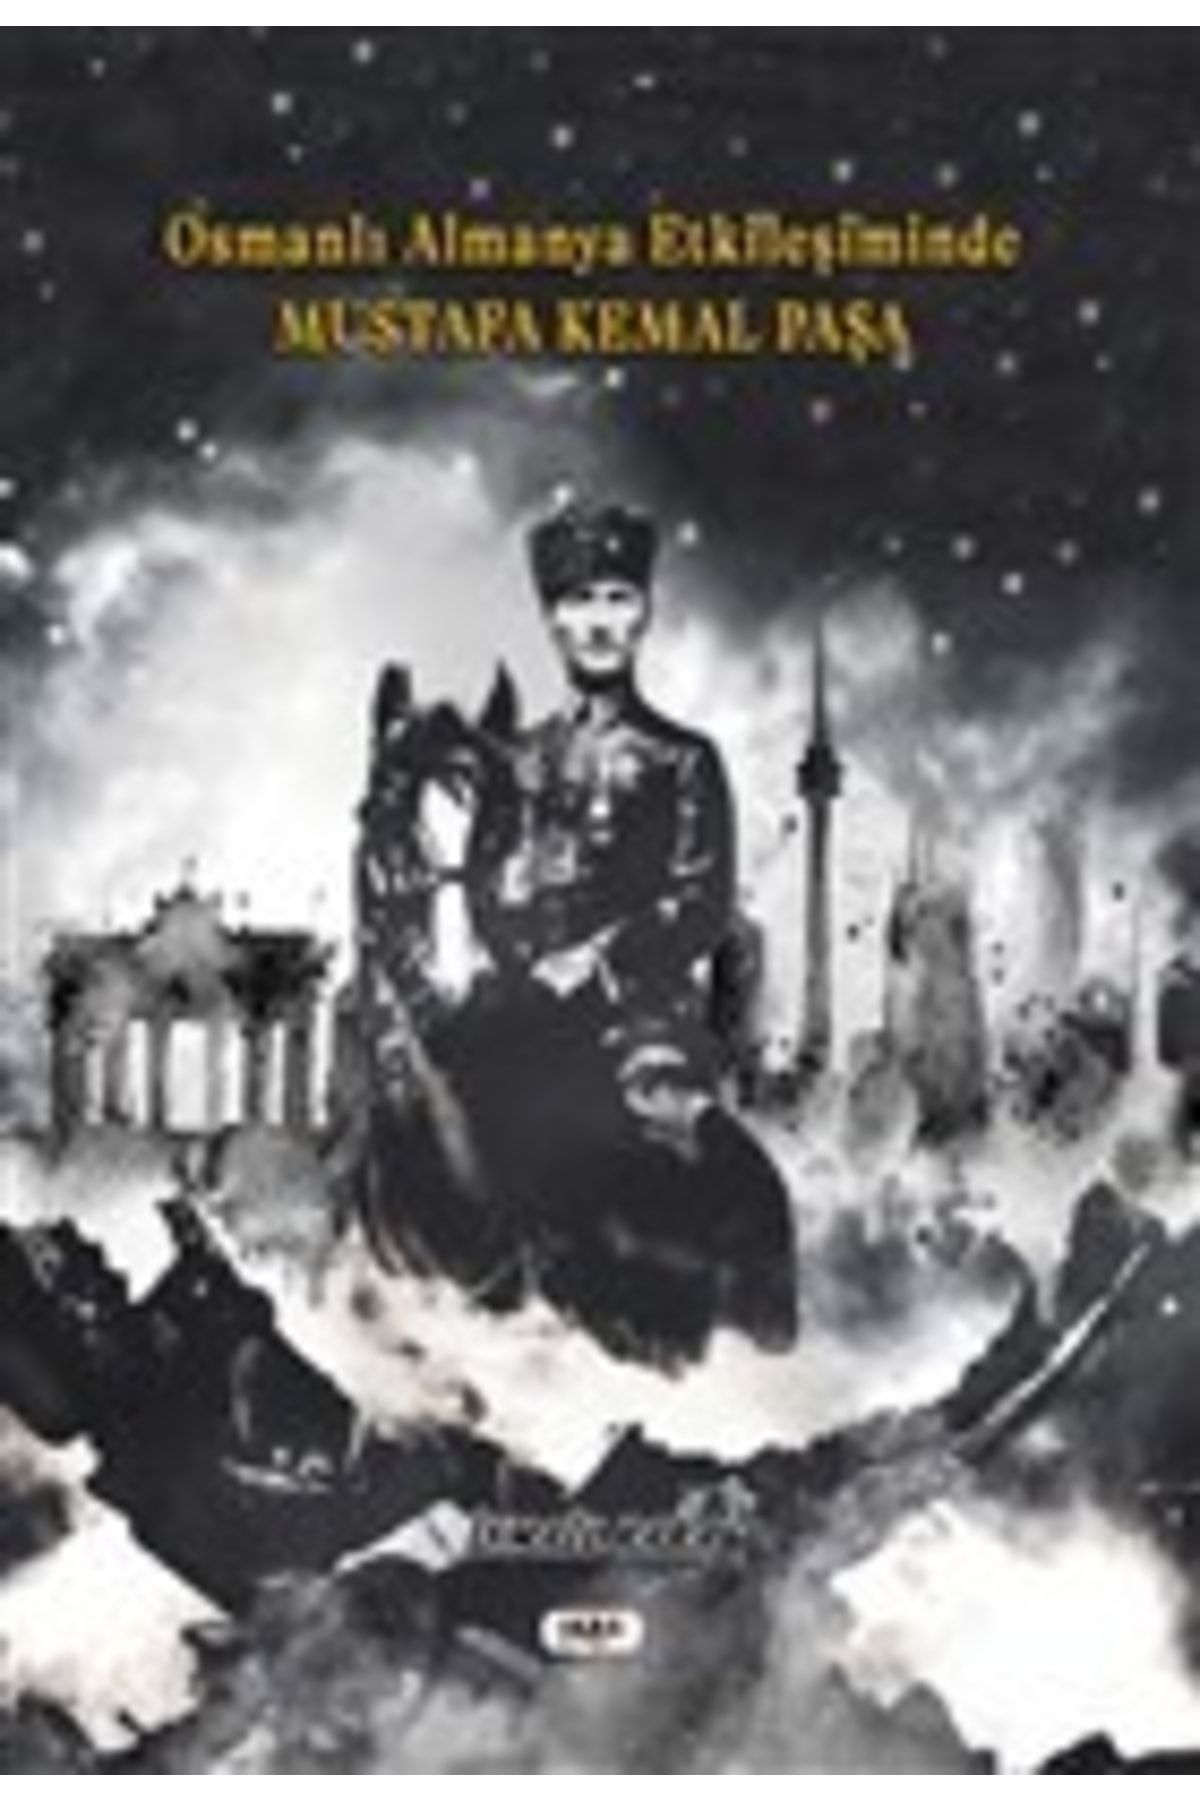 Tilki Kitap Osmanlı Almanya Etkileşiminde Mustafa Kemal Paşa